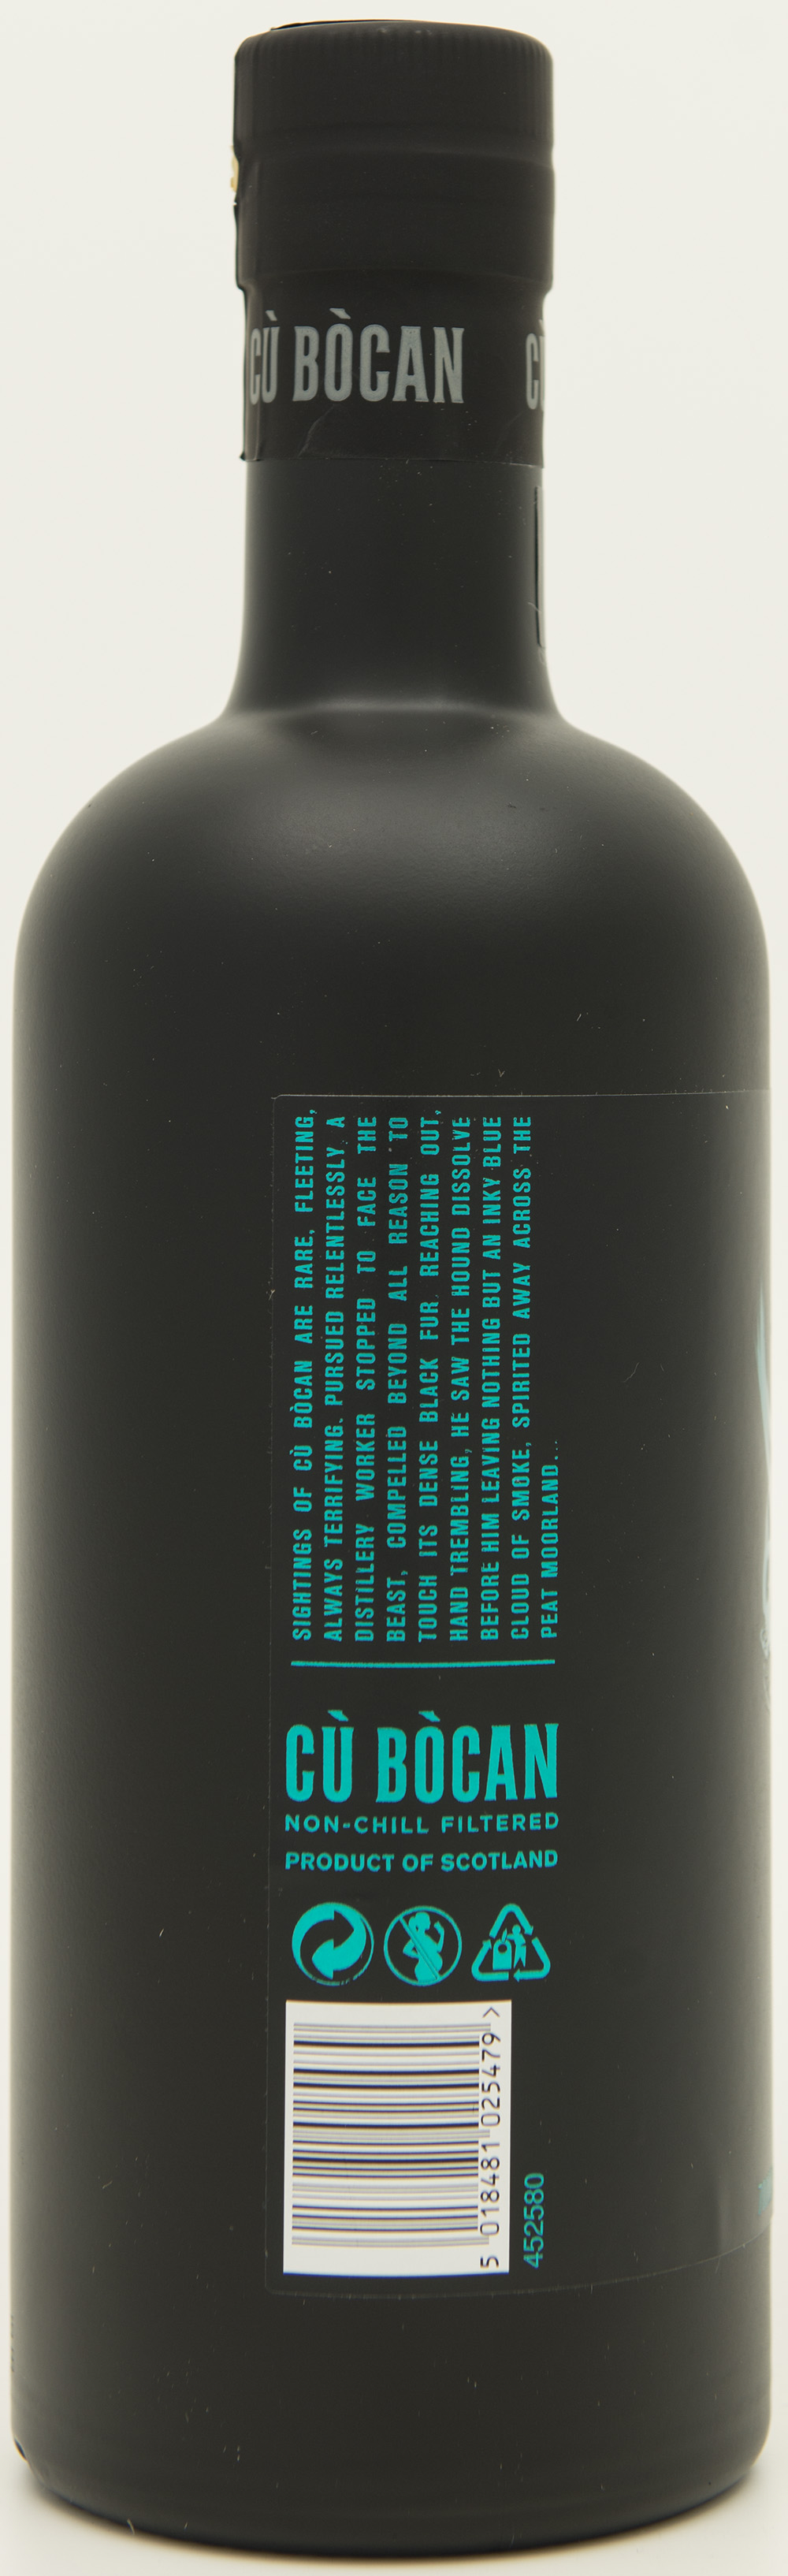 Billede: DSC_1136 - Tomatin Cu Bocan Limited Edition 1988 Cask Strength - bottle side.jpg